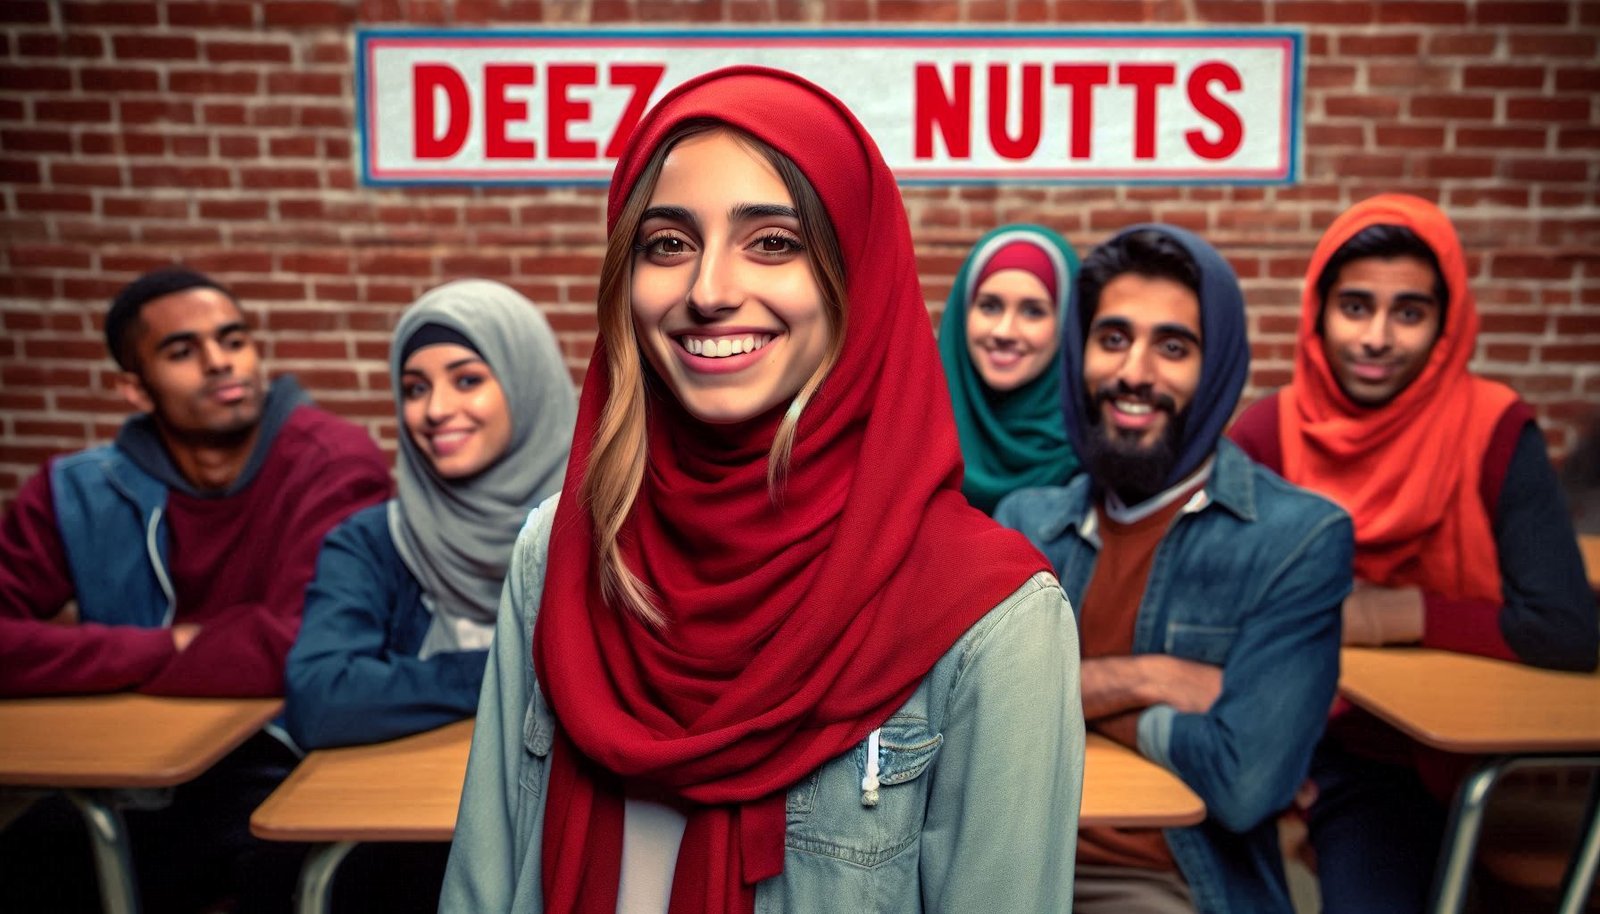 Deez Nuts Jokes: A Fun Look